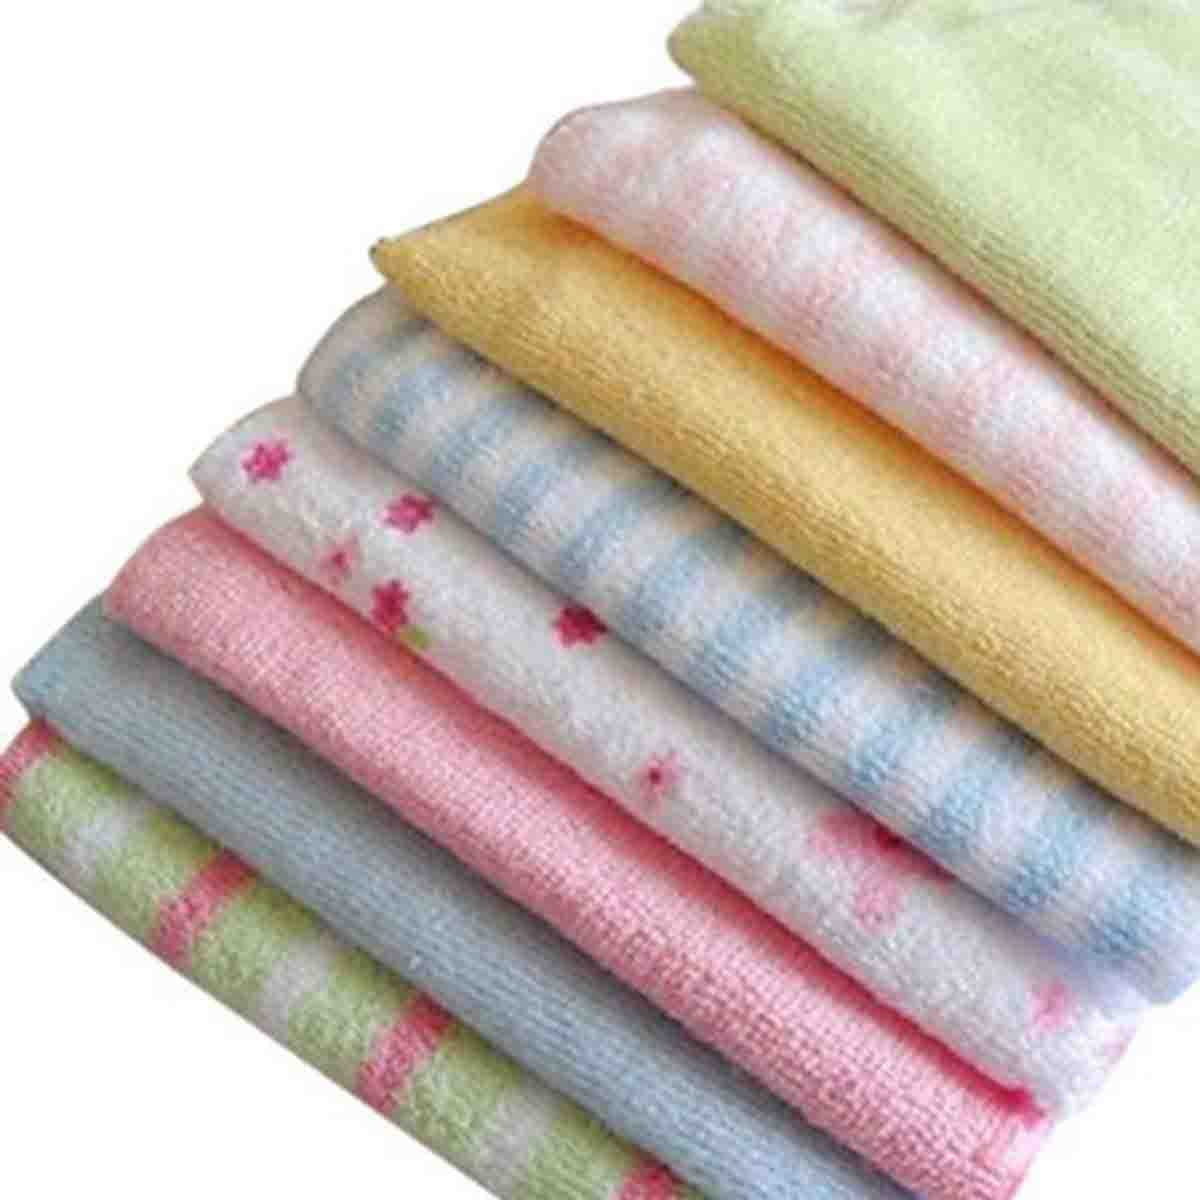 8 Pcs Soft Baby Newborn Children Bath Washcloth Towels For Bathing Feeding 